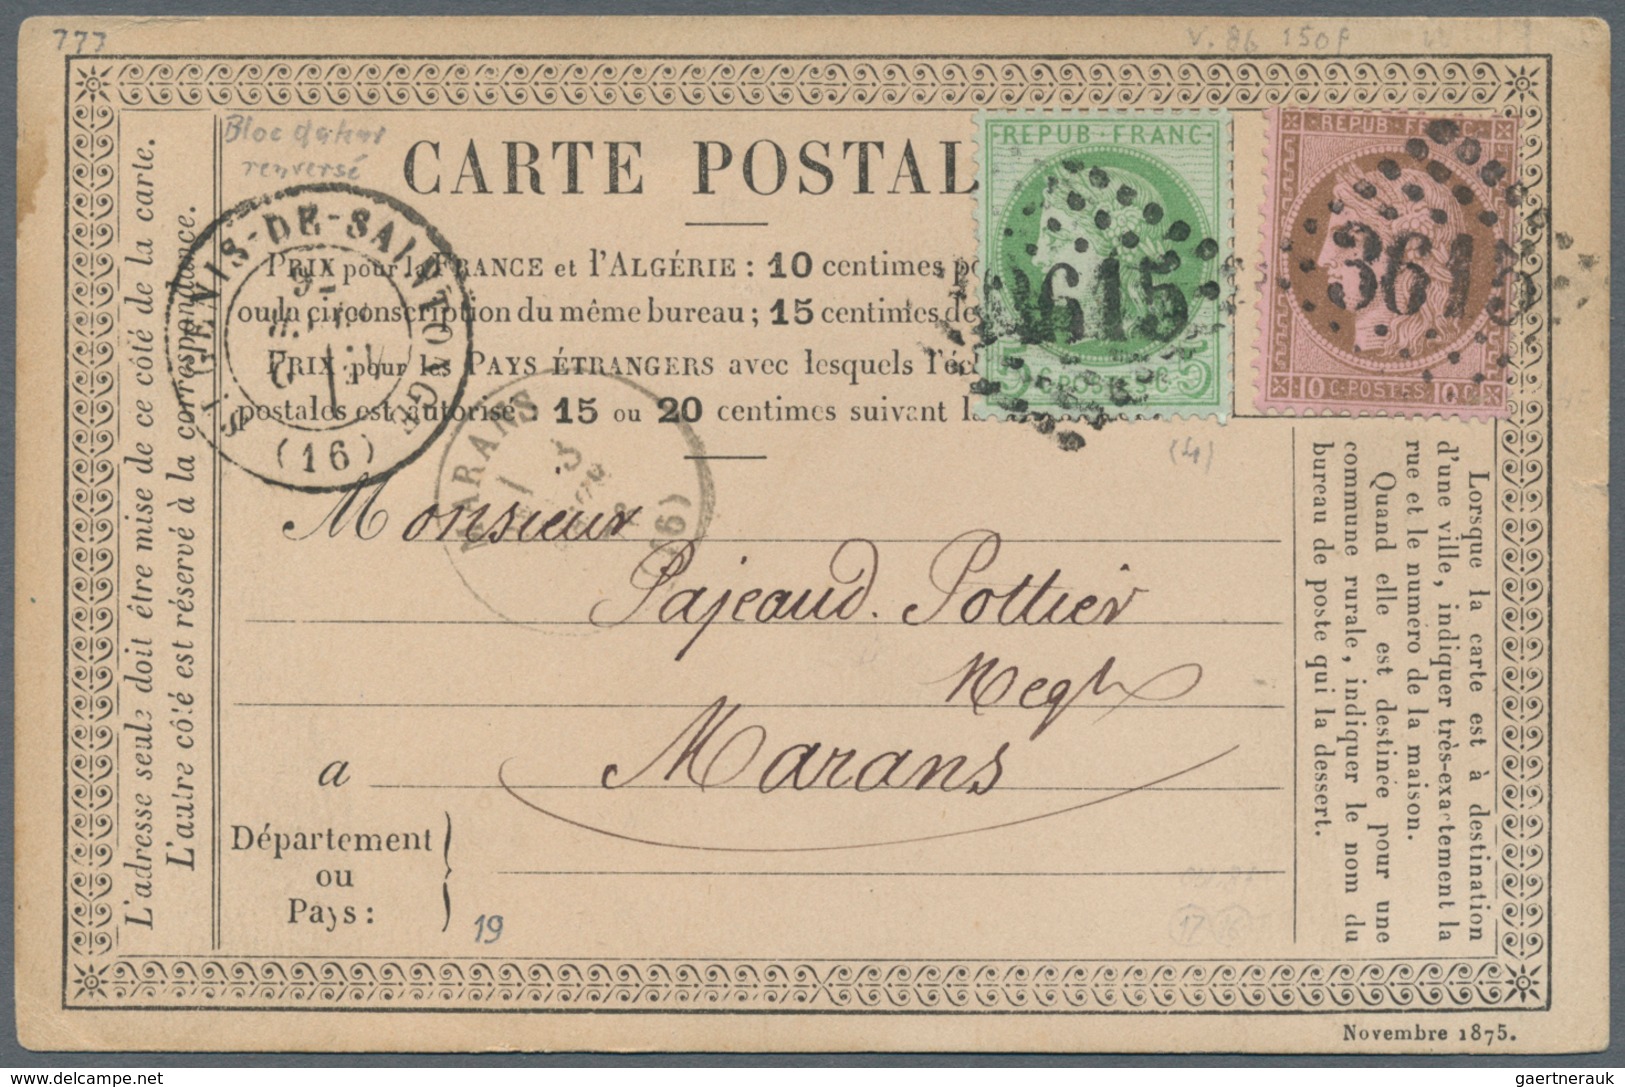 26358 Frankreich: 1798/1876, schöner kleiner Bestand von Vorphilabriefen sowie Ceres und Napoleon-Frankatu